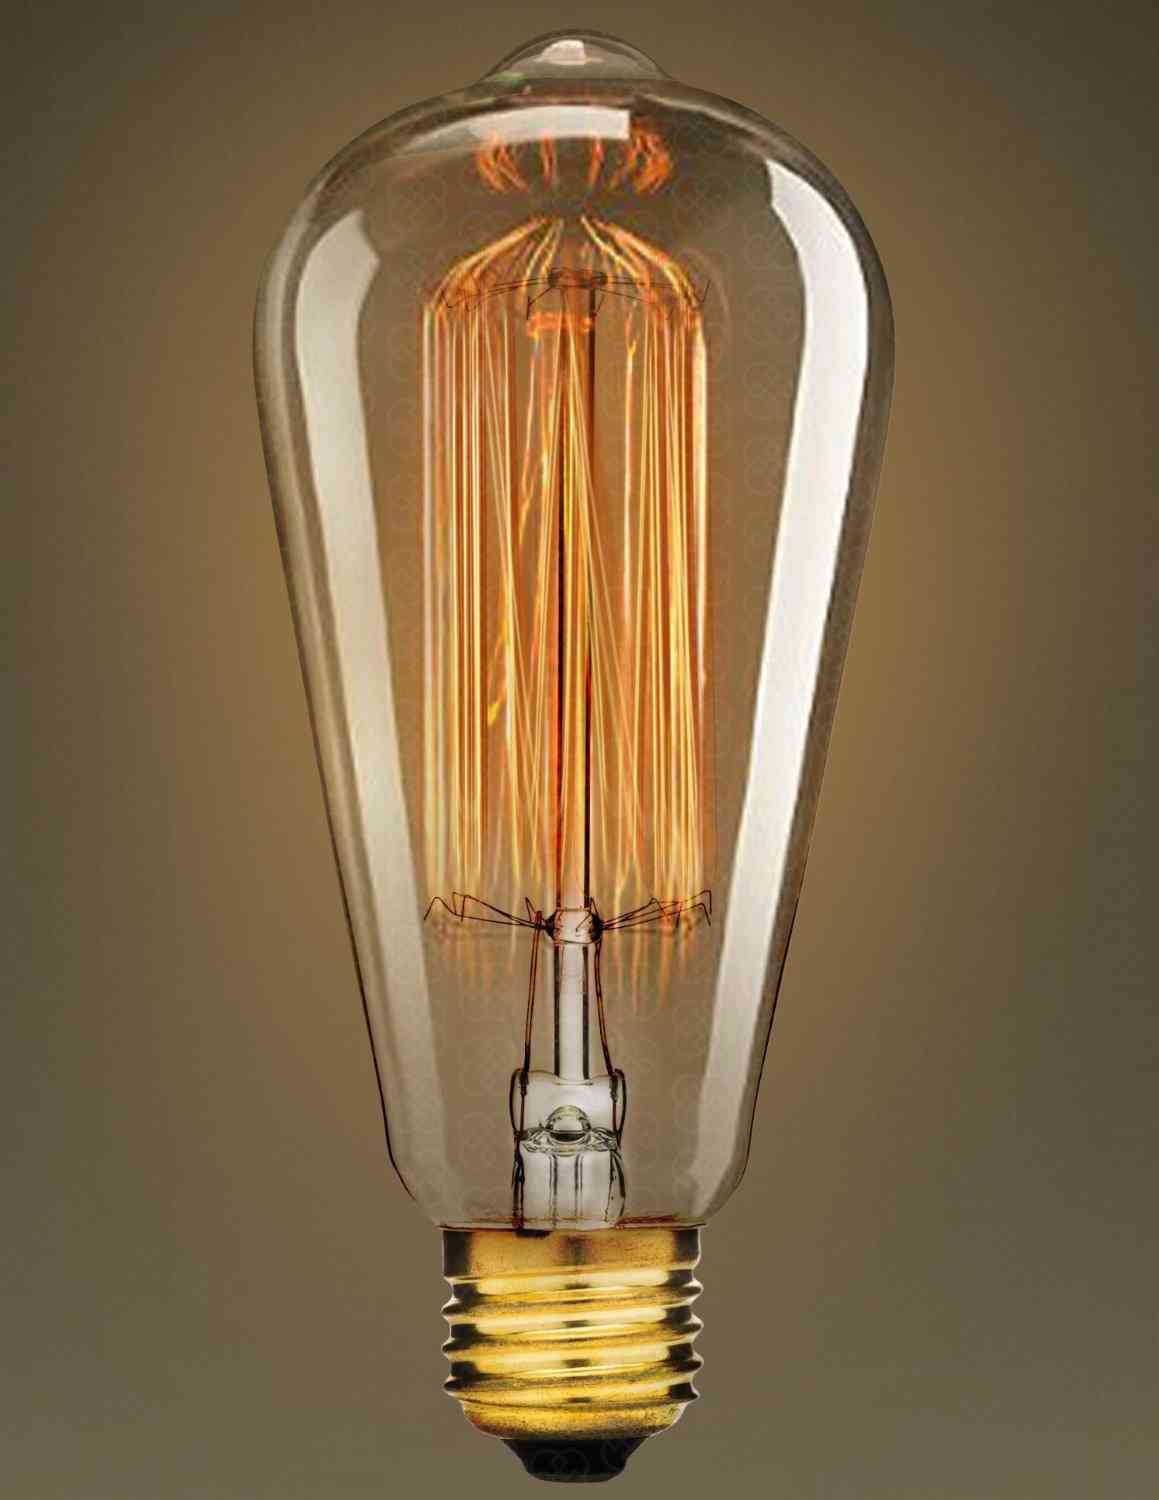 Marconi-tyylinen hehkulamppu vintage edison -kopiointi 40 watin ja 60 watin e27